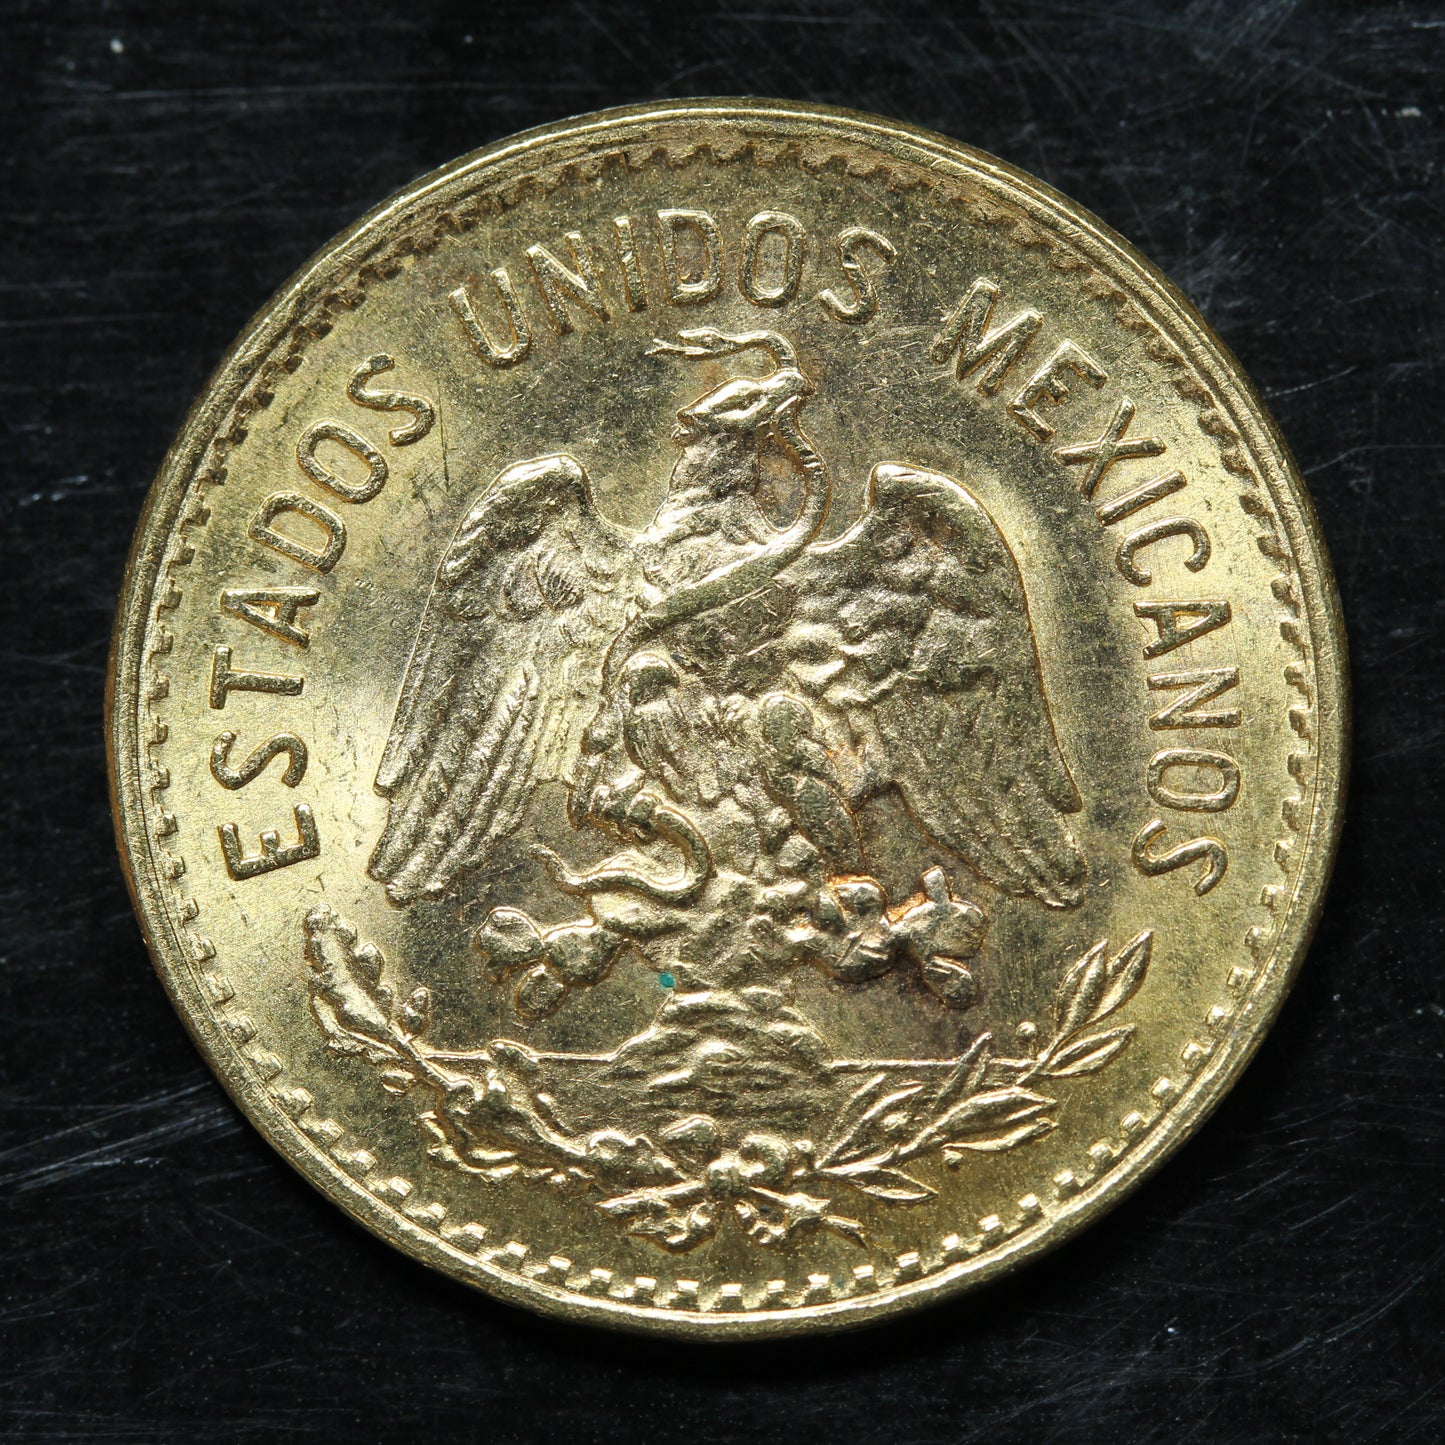 1955 5 Pesos Cinco Pesos Mexico Gold Coin